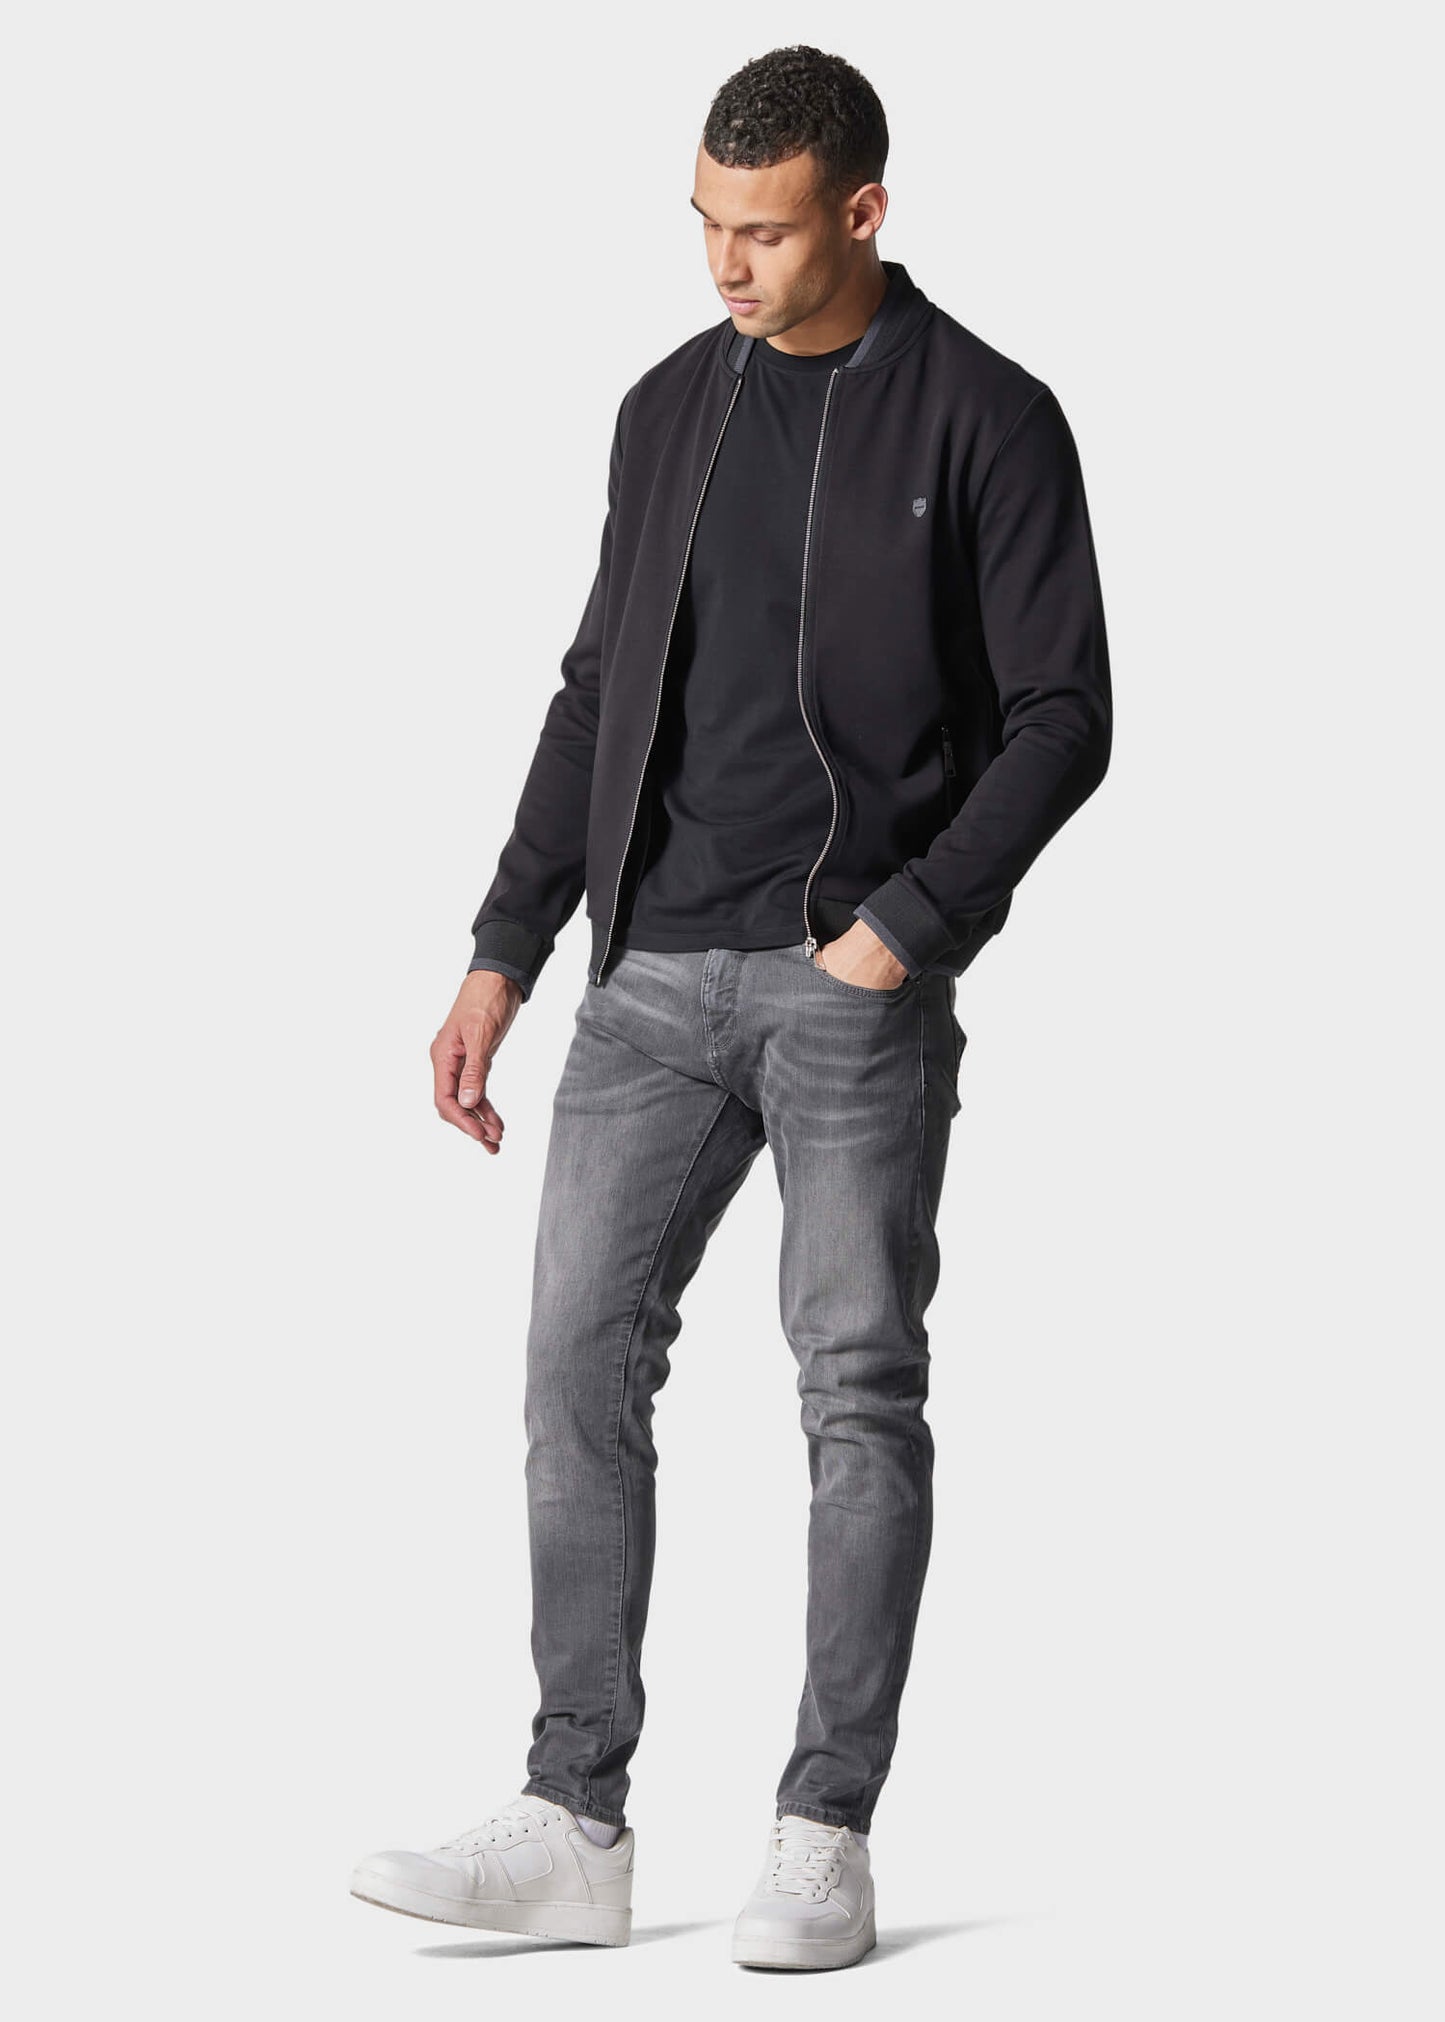 Neutra Black Zip-Up Sweatshirt